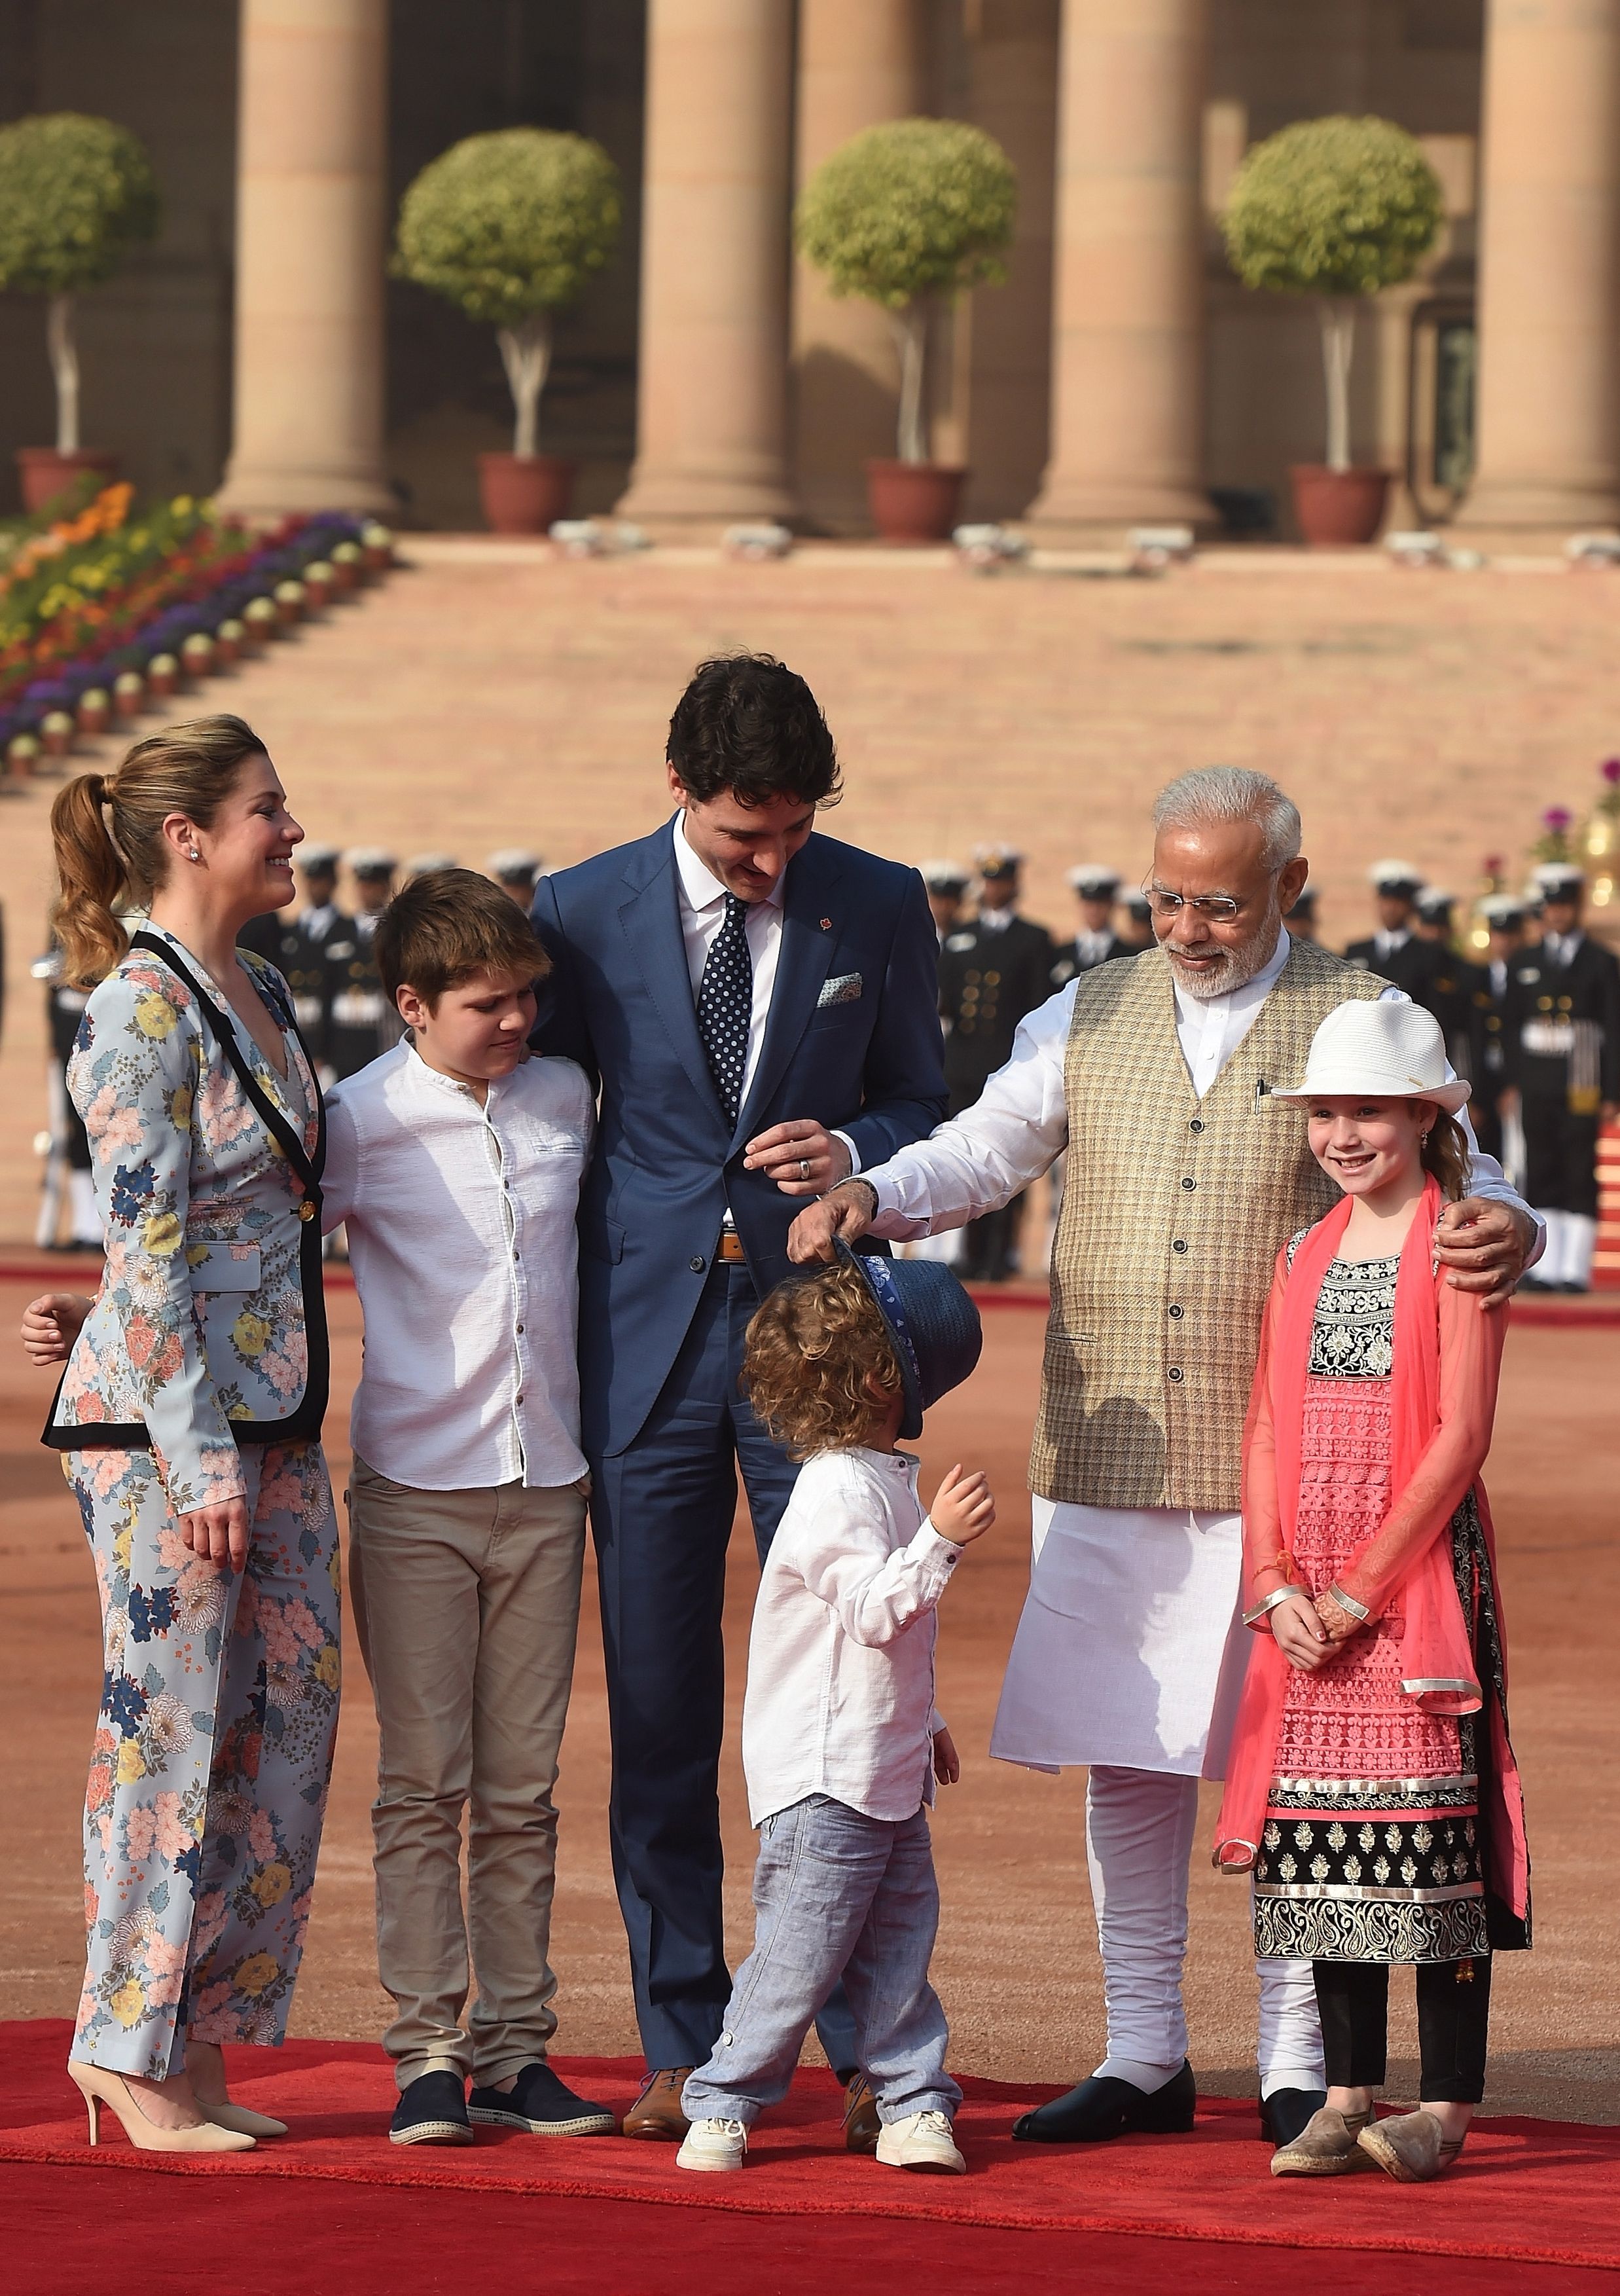 رئيس الوزراء الكندى يصطحب عائلته فى زيارته الرسمية للهند